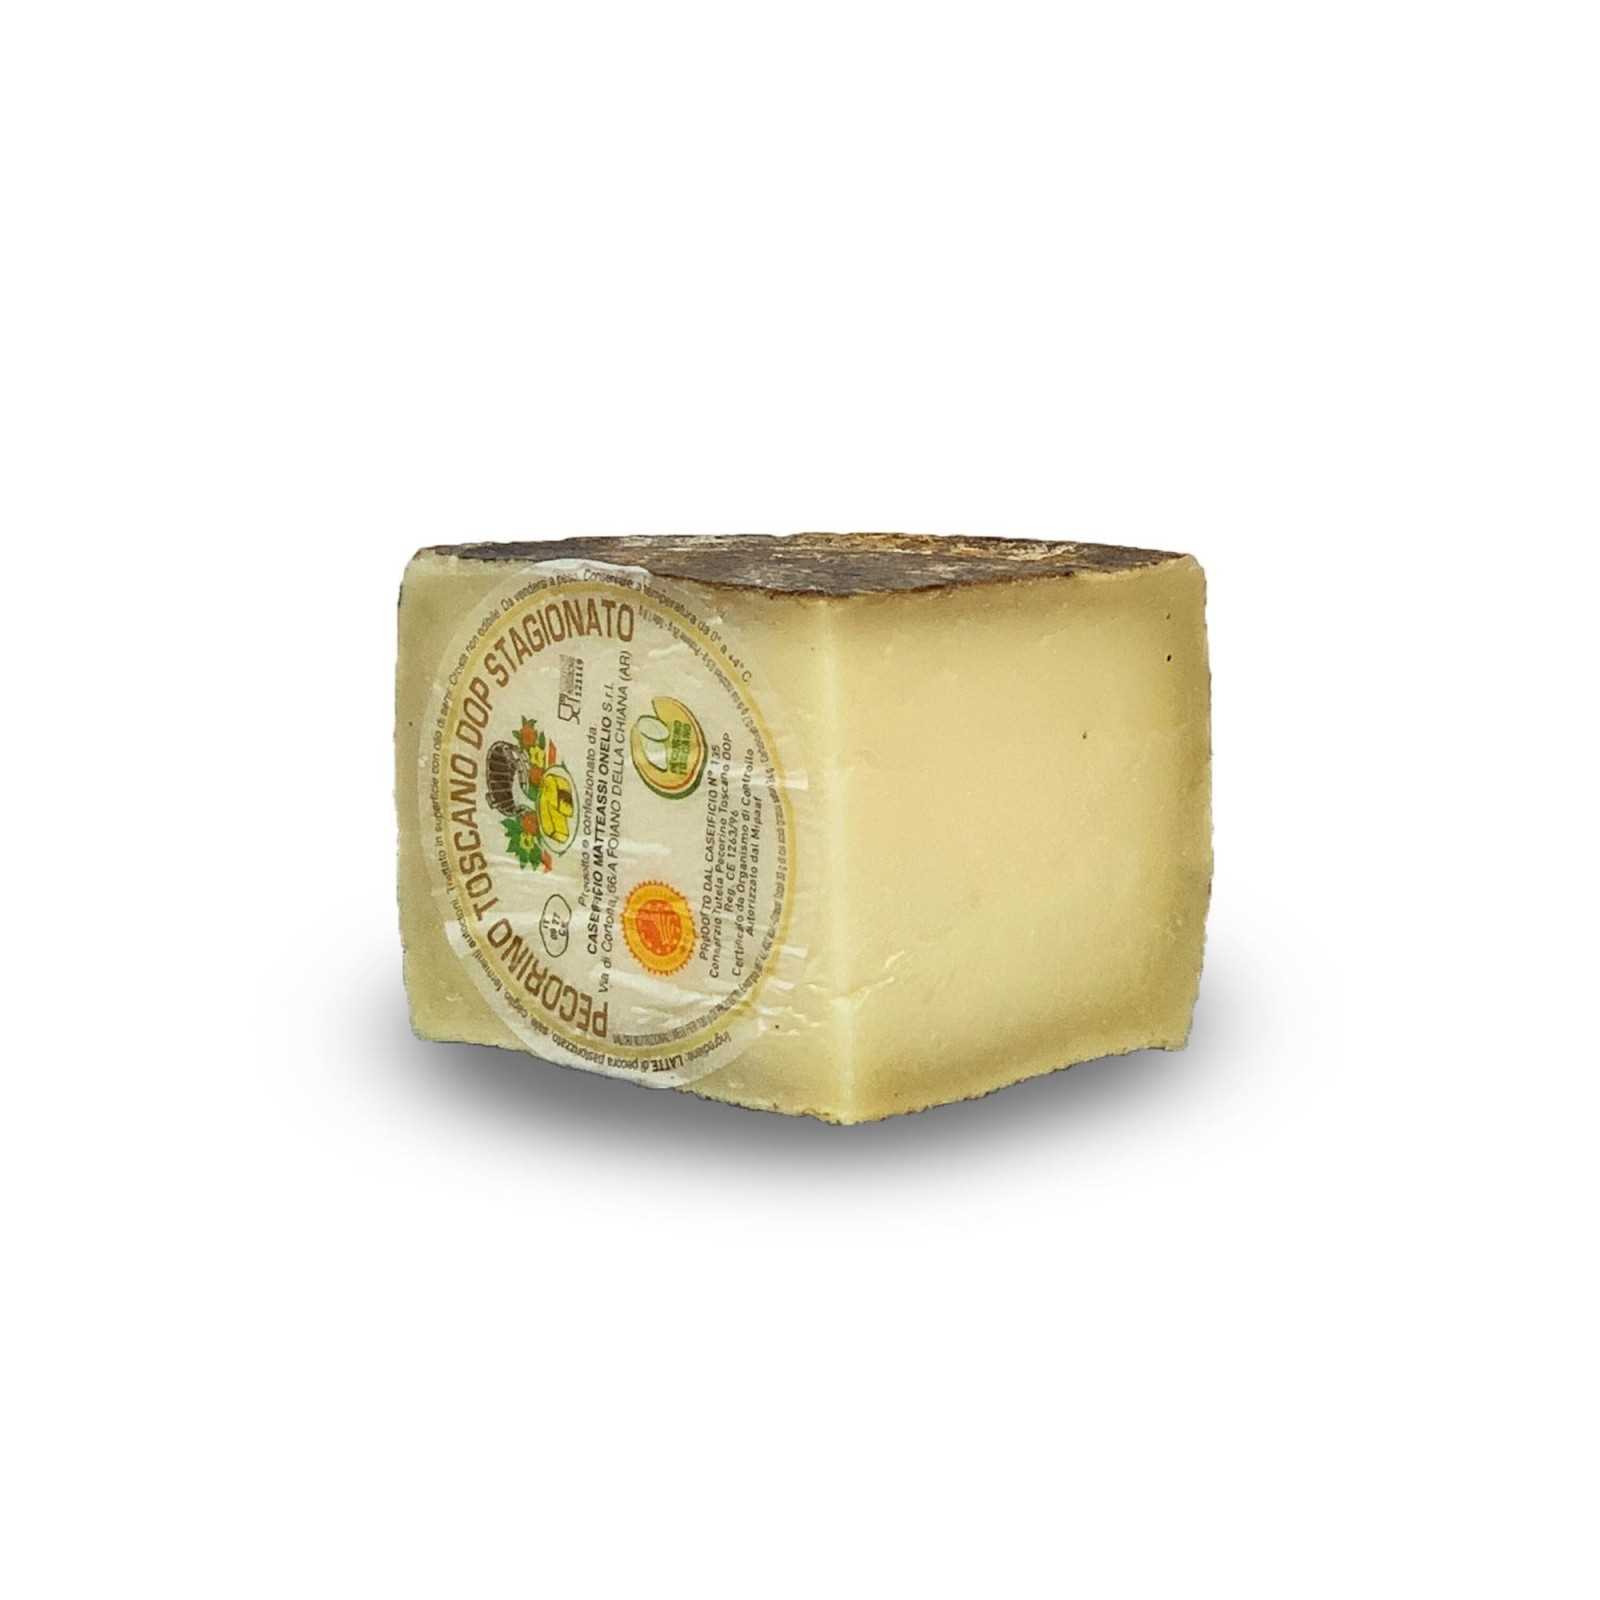 Der Gereifter Toskanische Pecorino-Käse G.U. ist ein traditioneller Käse, der sich durch eine harte Paste aus pasteurisierter Schafsmilch mit Zusatz von Lab und Salz auszeichnet. Der Gereifter Toskanische Pecorino-Käse G.U. hat eine Mindestreifezeit von 120 Tagen und eignet sich zur Bereicherung traditioneller italienischer Gerichte.